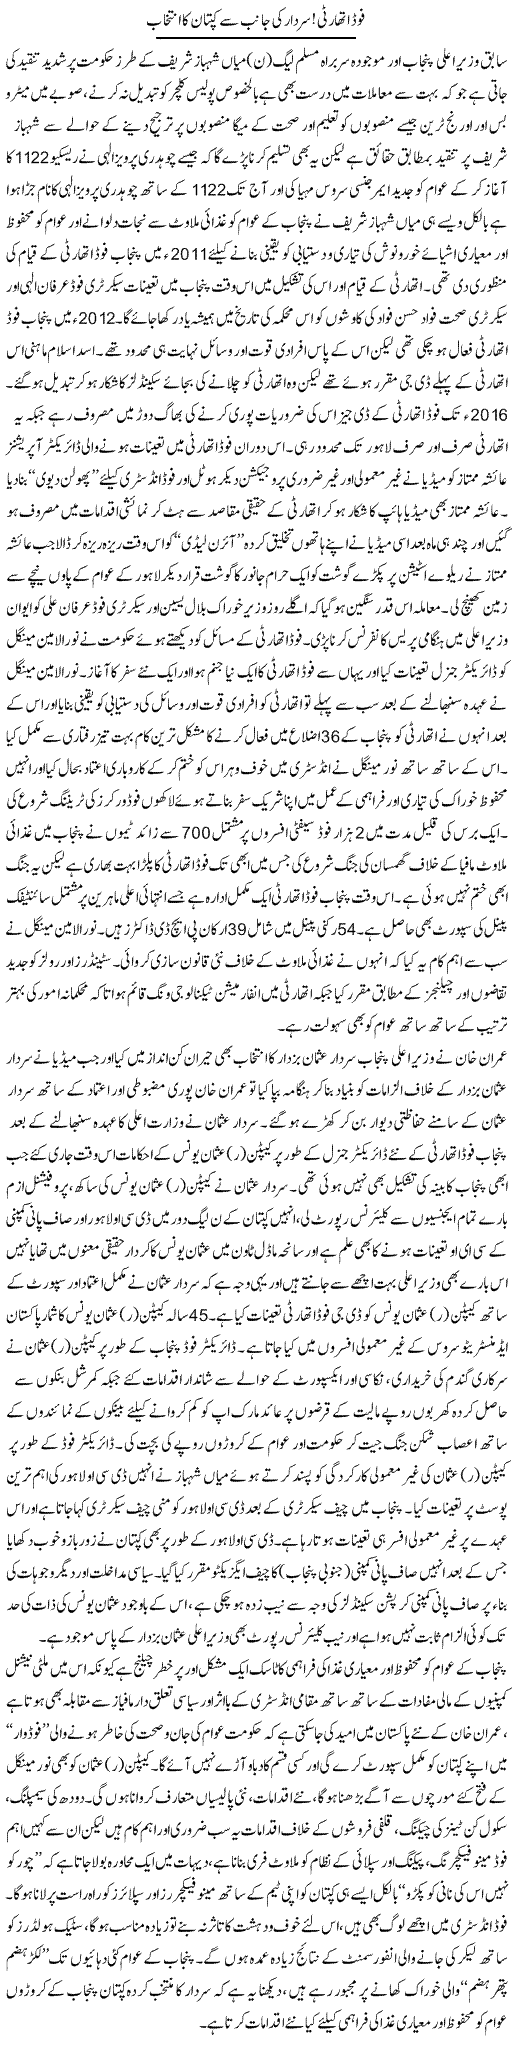 Food Authority, Sardar Ki Janib Se Captain Ka Intikhab | Rizwan Asif | Daily Urdu Columns